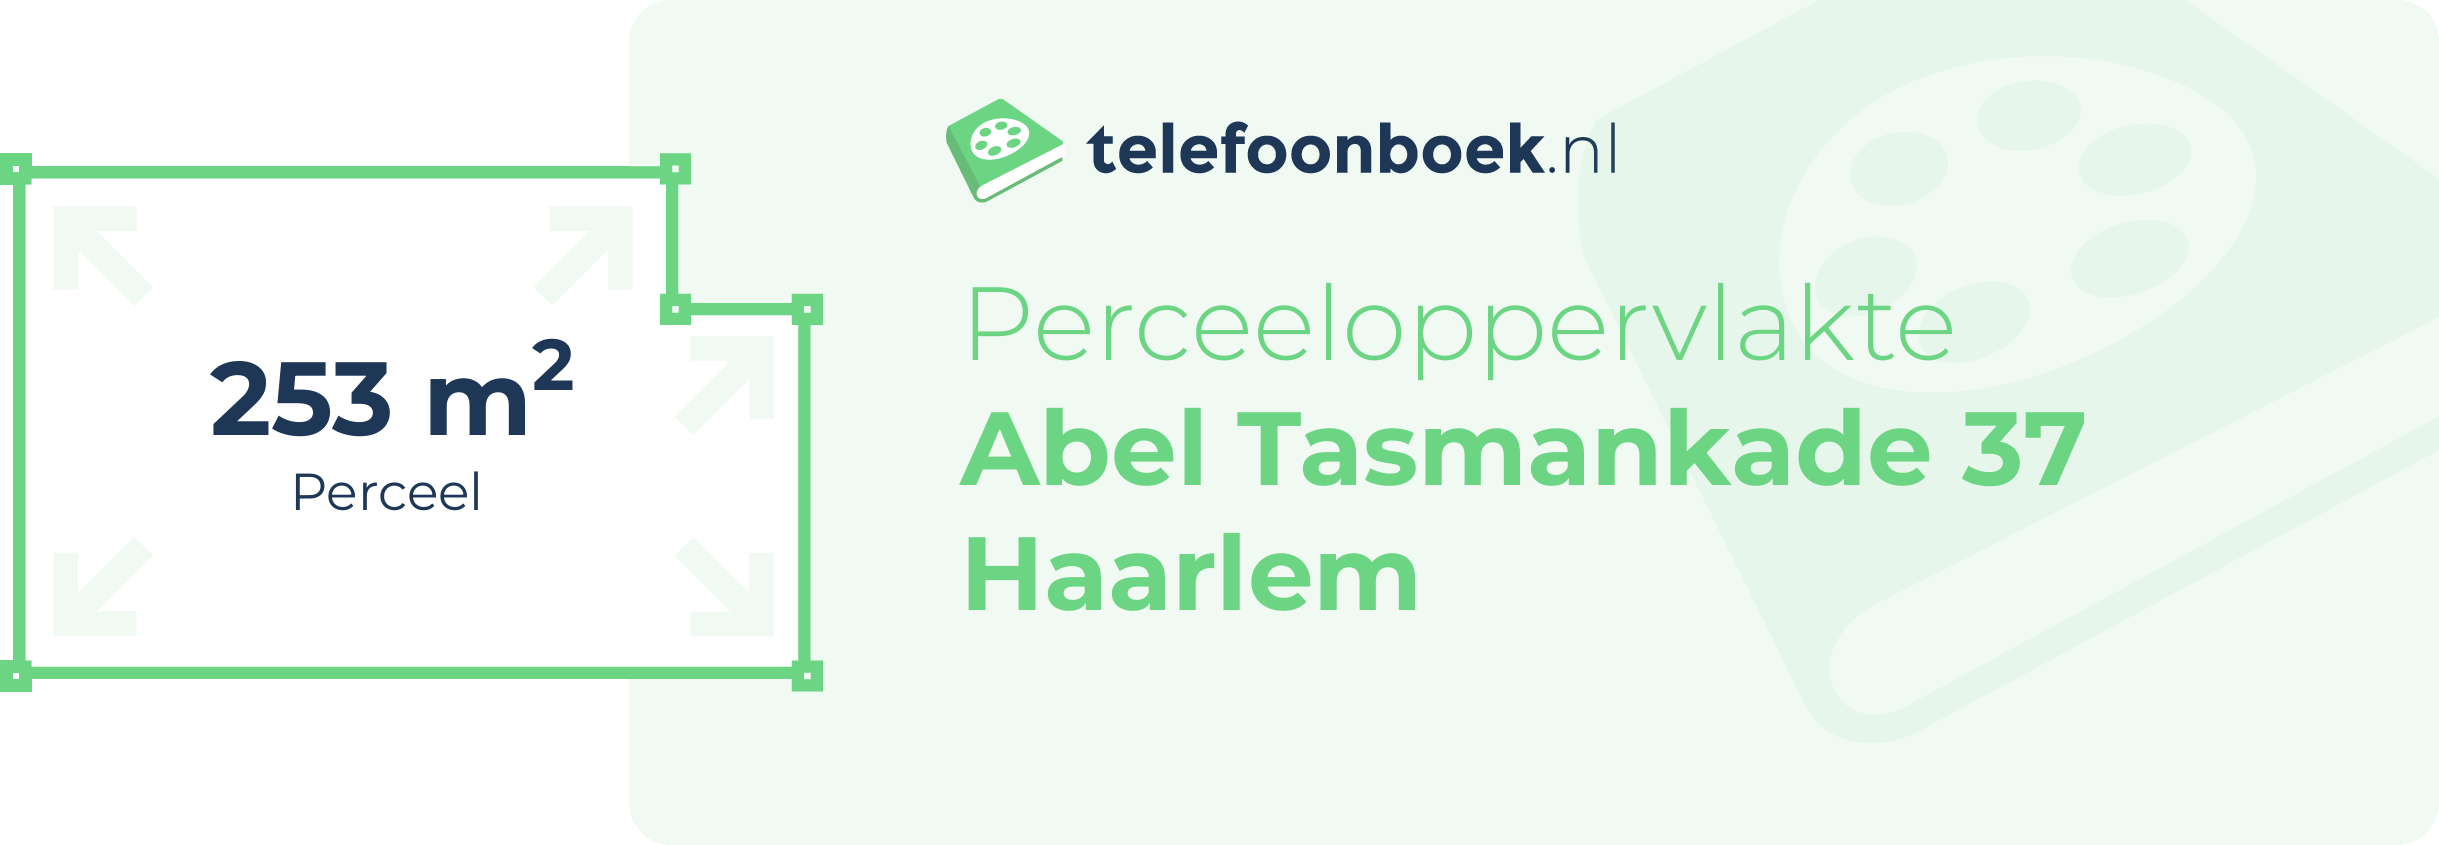 Perceeloppervlakte Abel Tasmankade 37 Haarlem